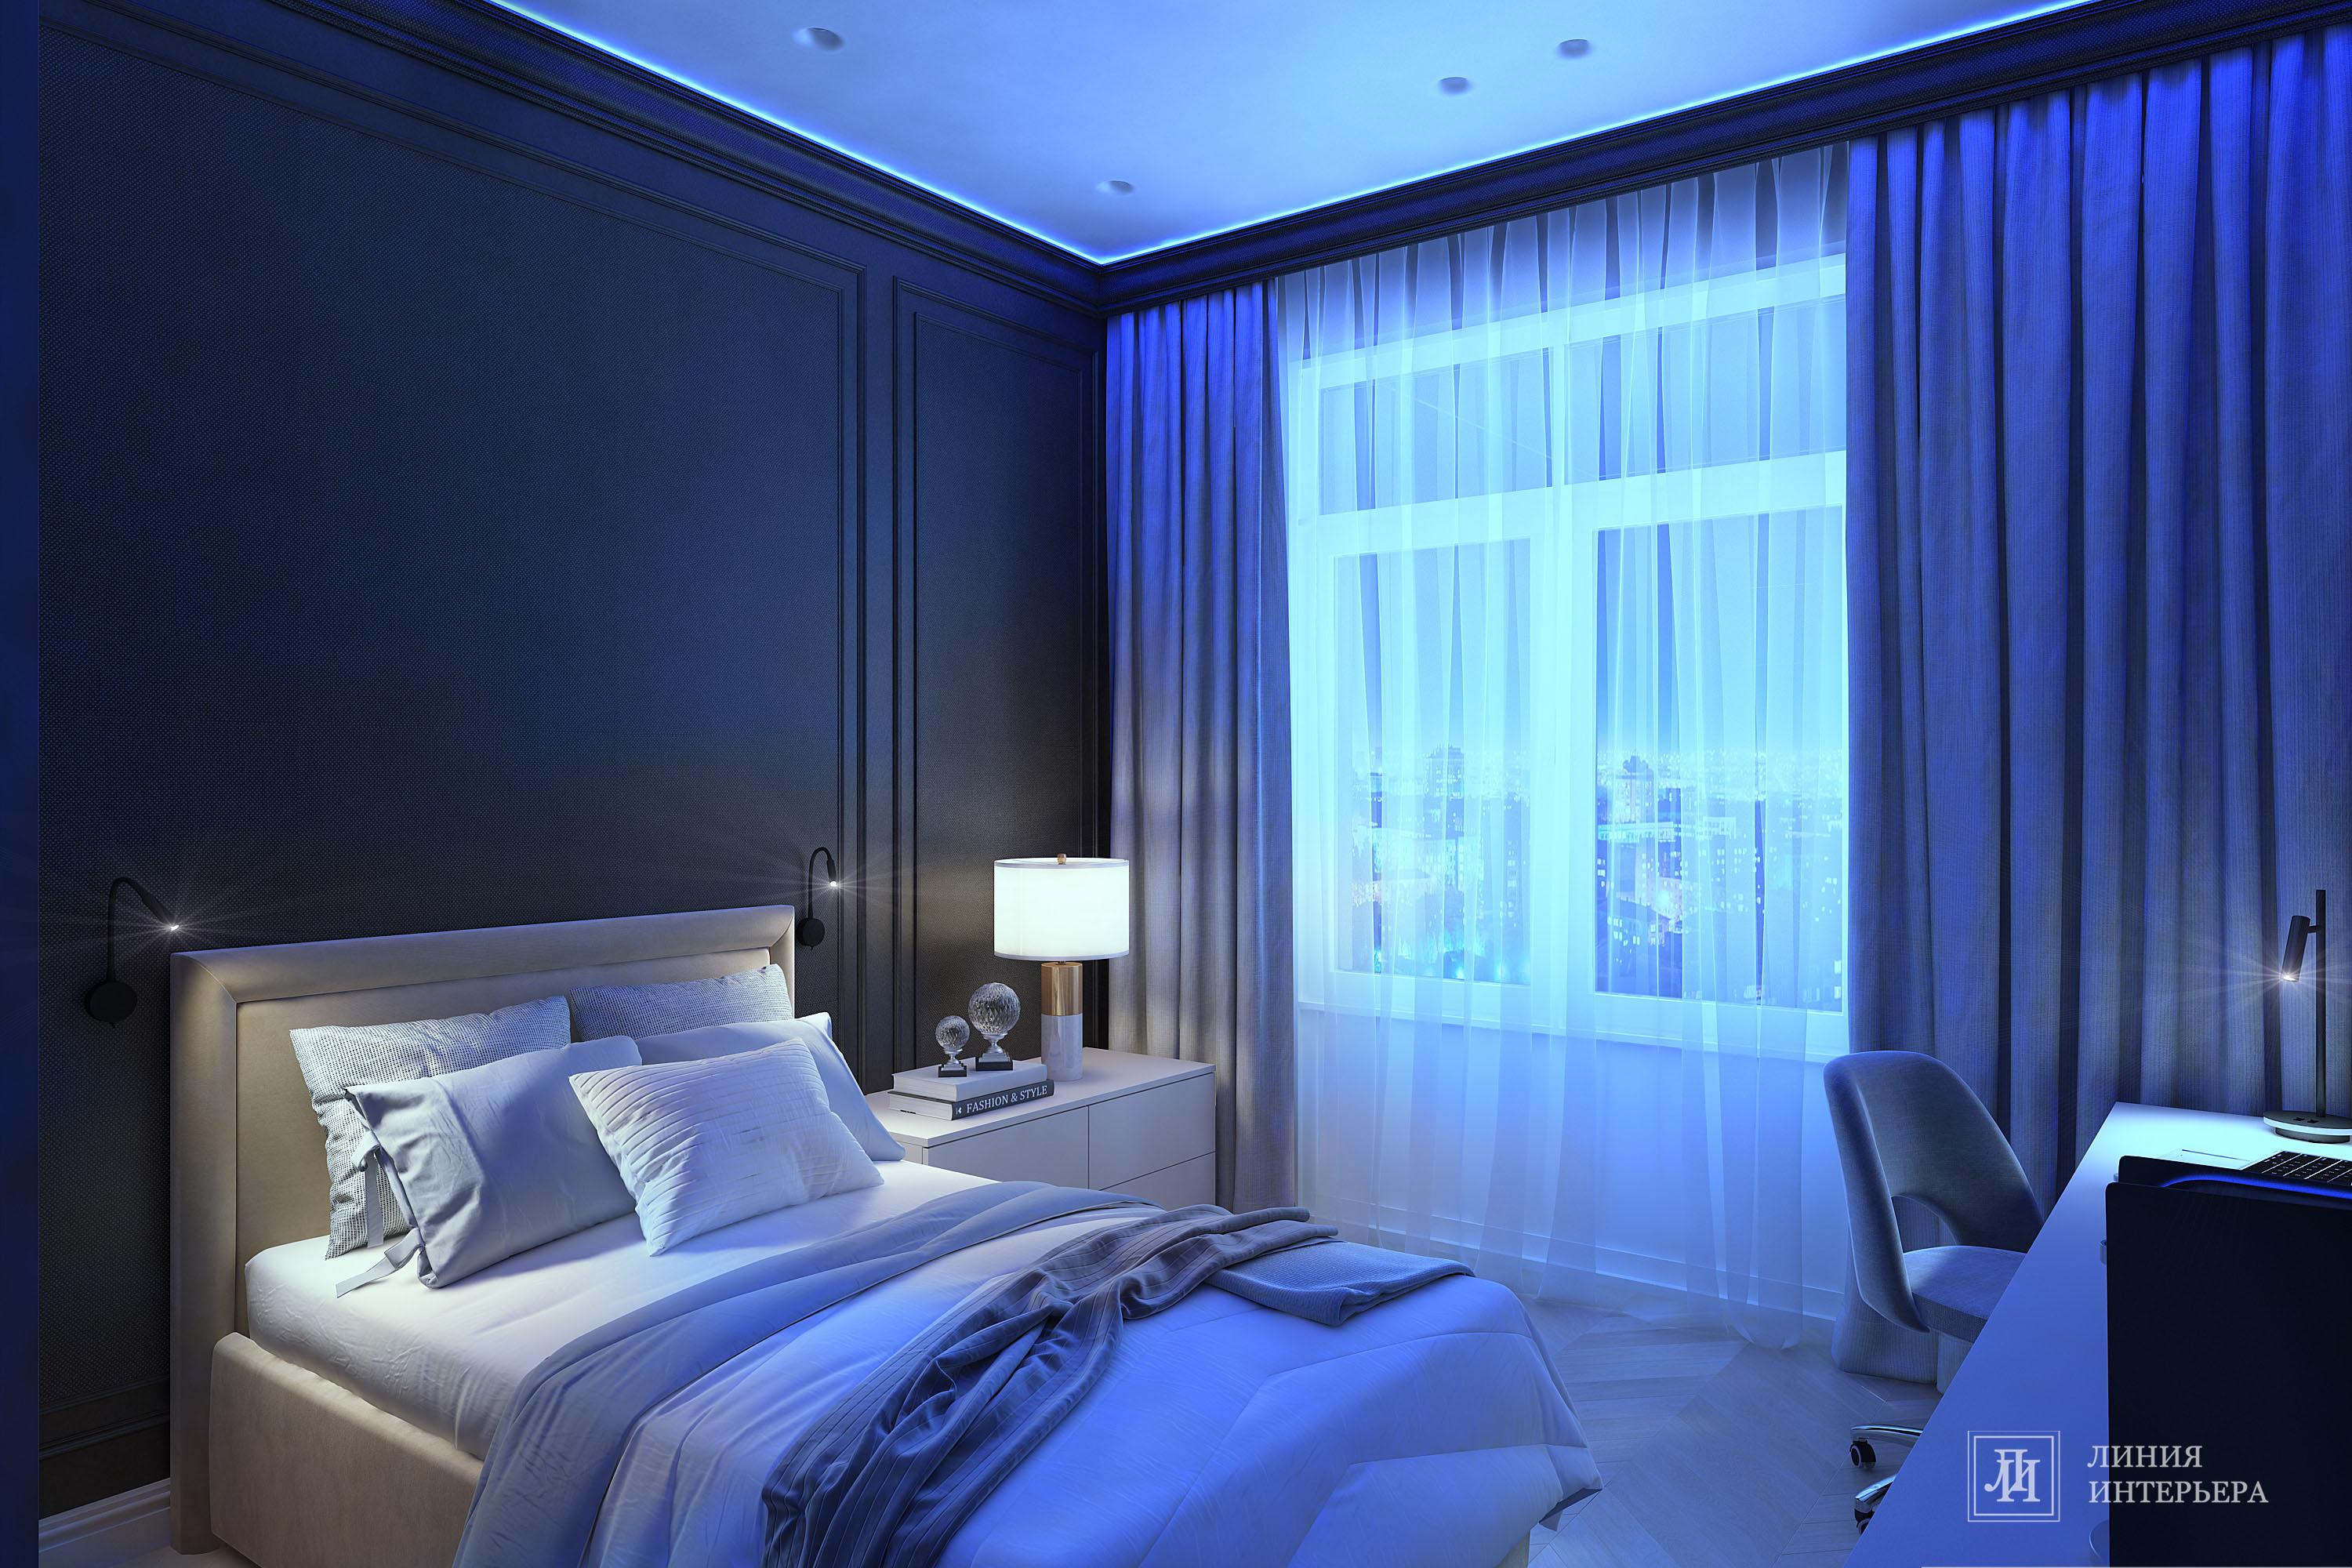 Интерьер спальни c рабочим местом, нишей с подсветкой, световыми линиями, рейками с подсветкой, подсветкой настенной, подсветкой светодиодной и с подсветкой